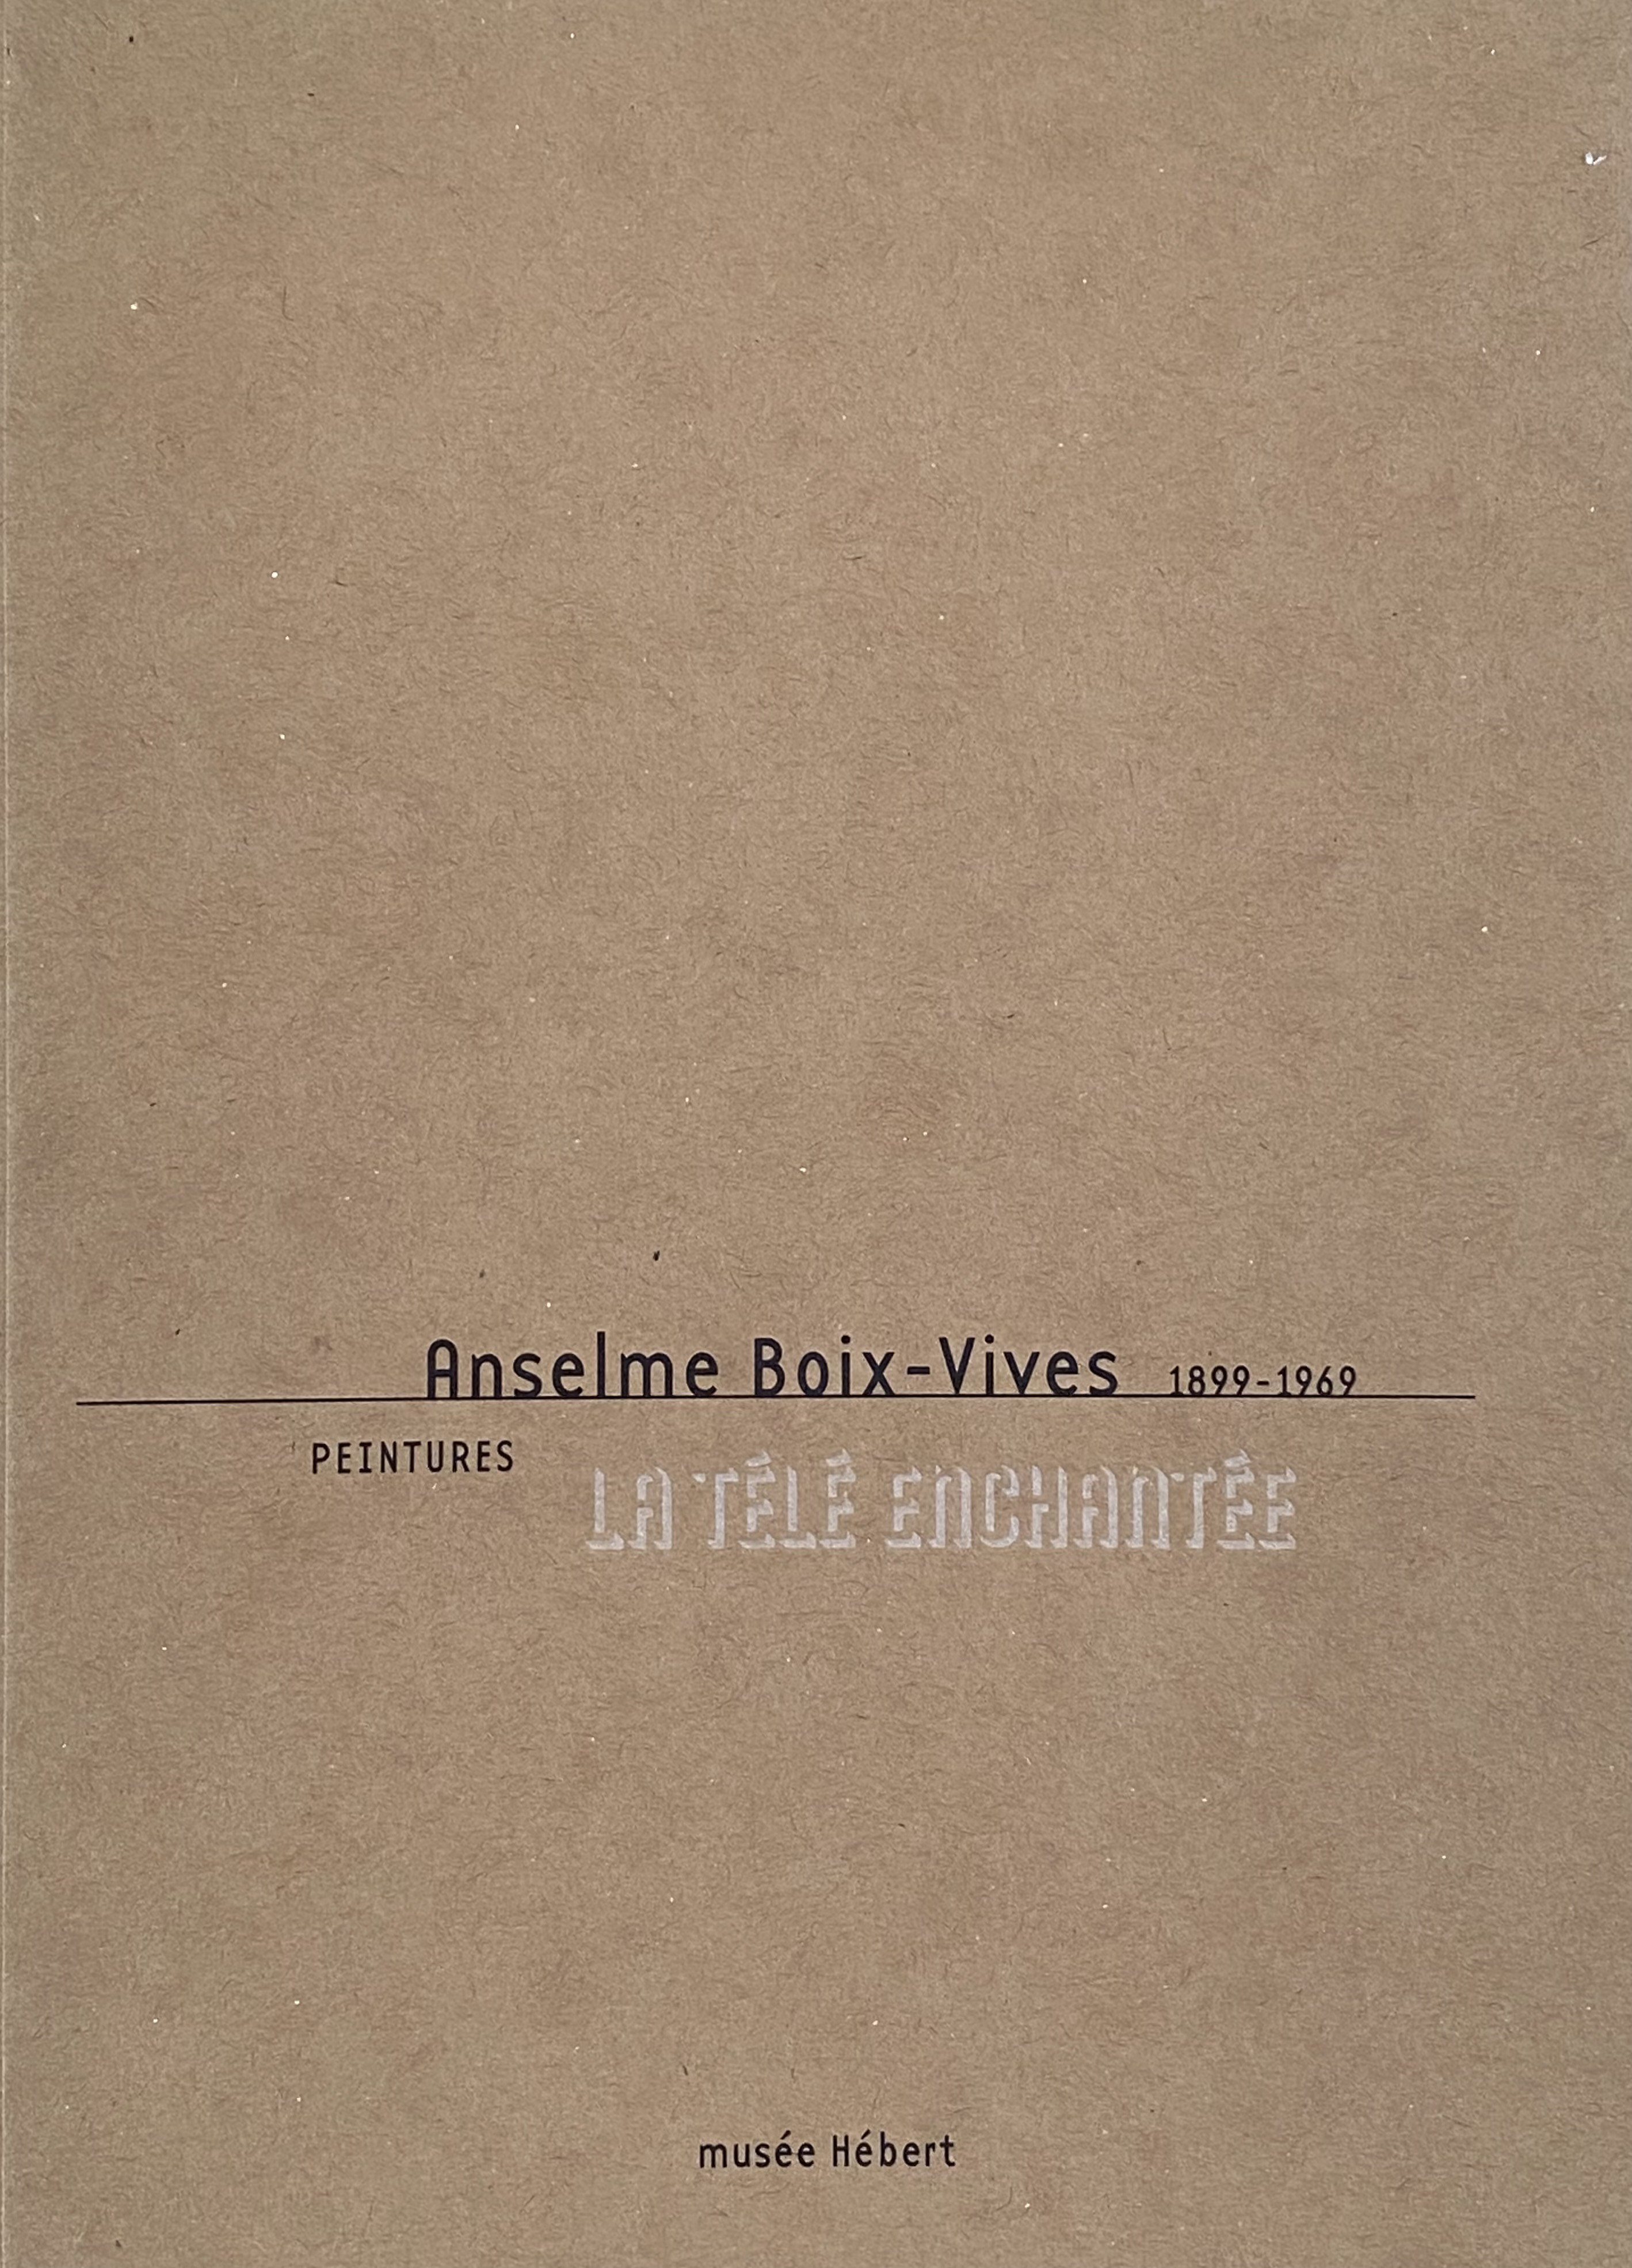 Anselme Boix-Vives. La télé enchantée